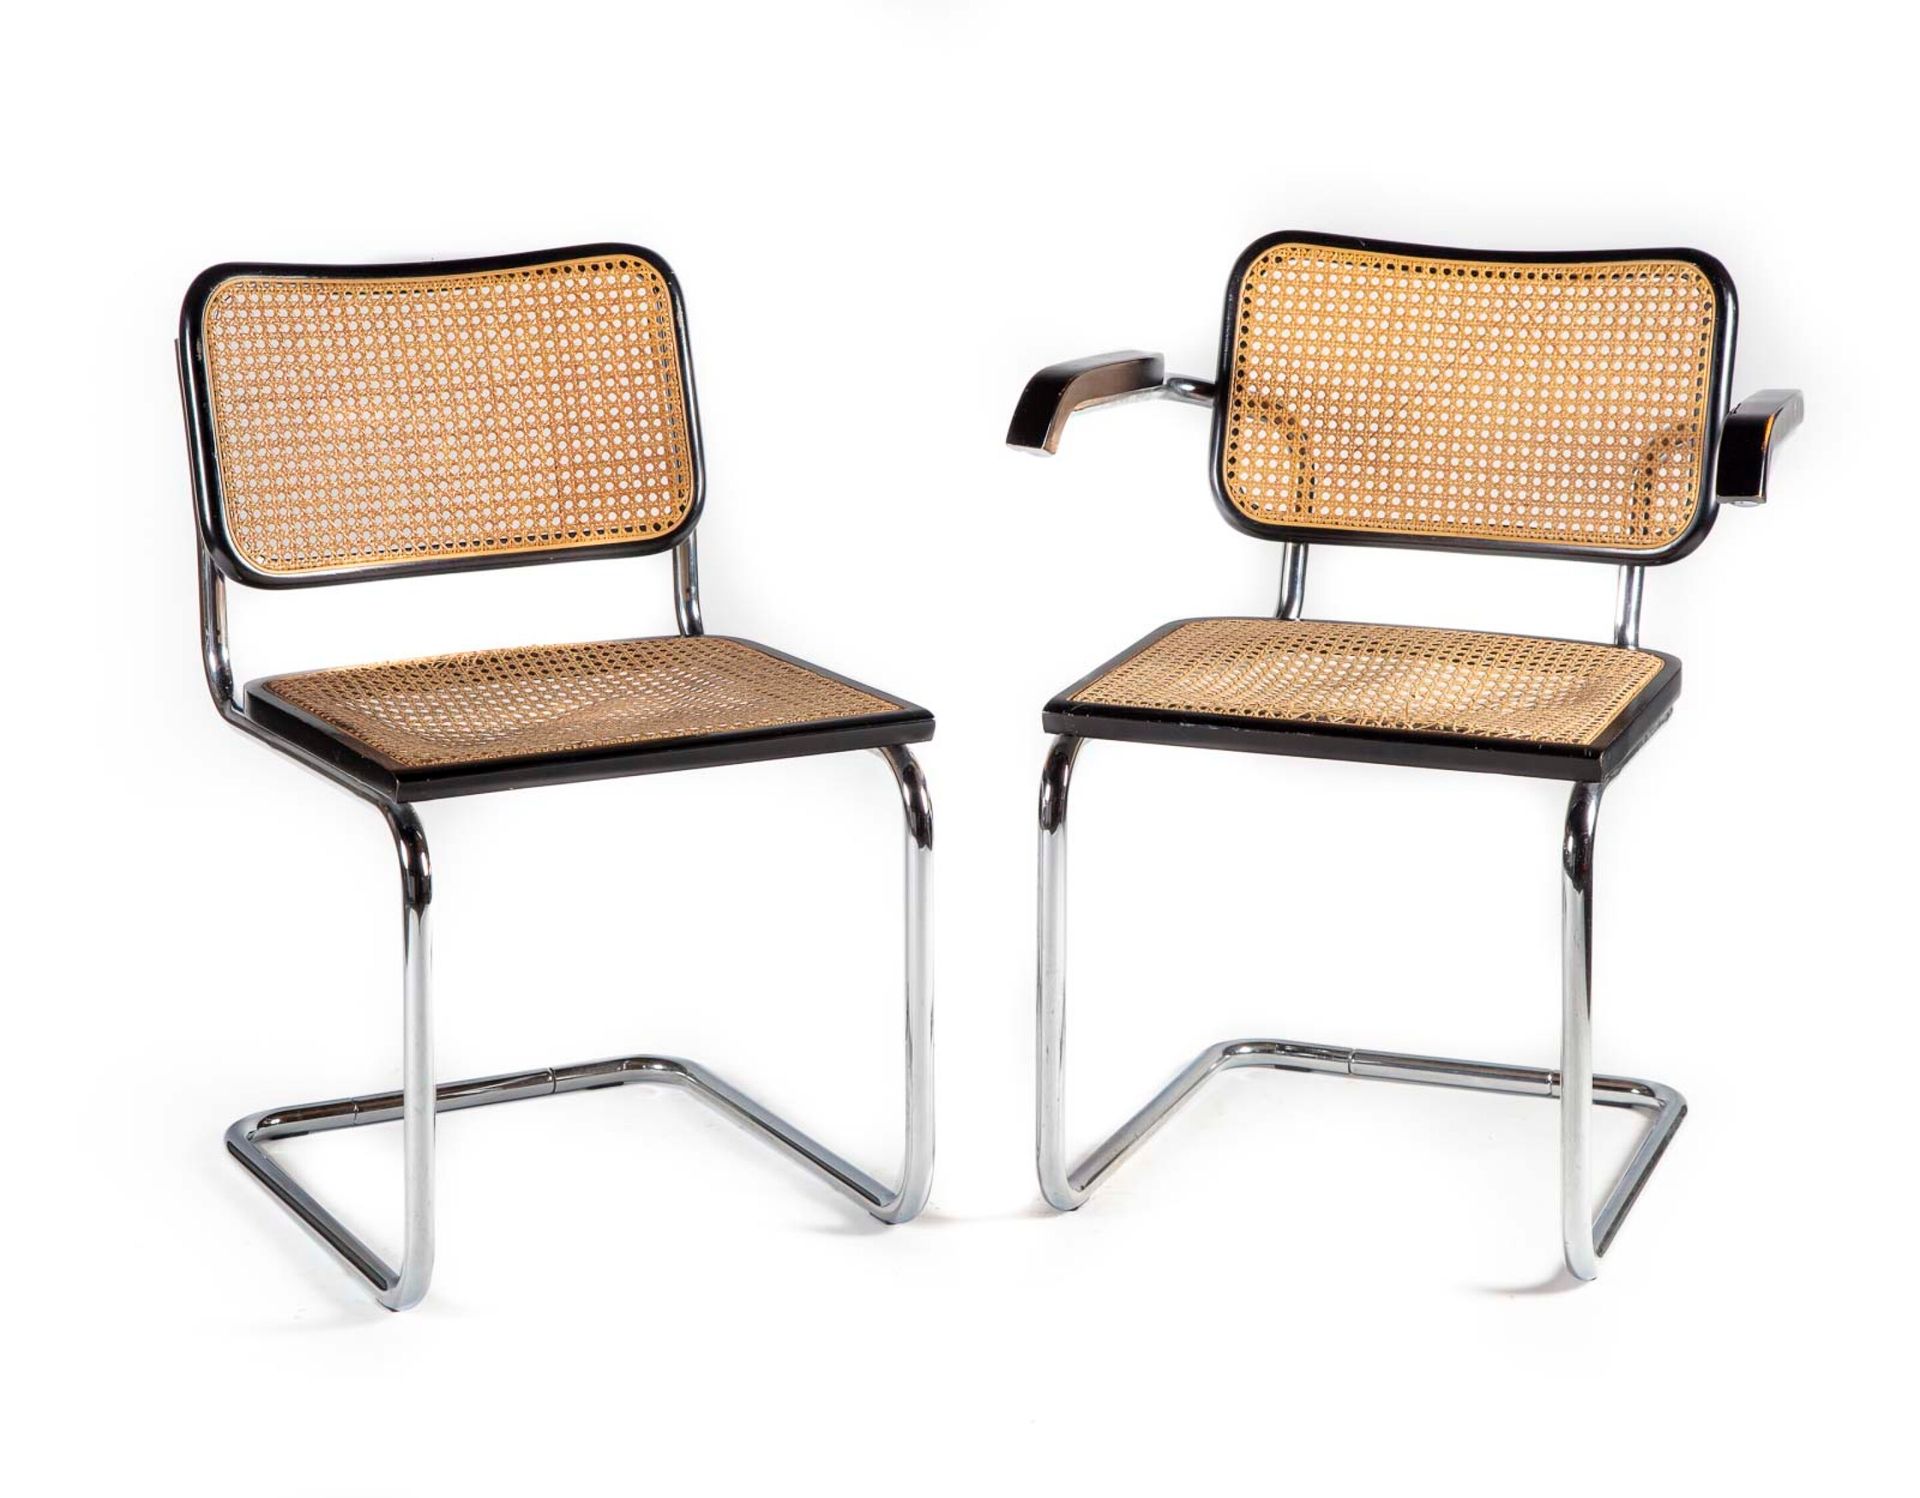 Null 套装由一把椅子和一把扶手椅组成，钢结构，漆木和藤条软垫。

约1970年